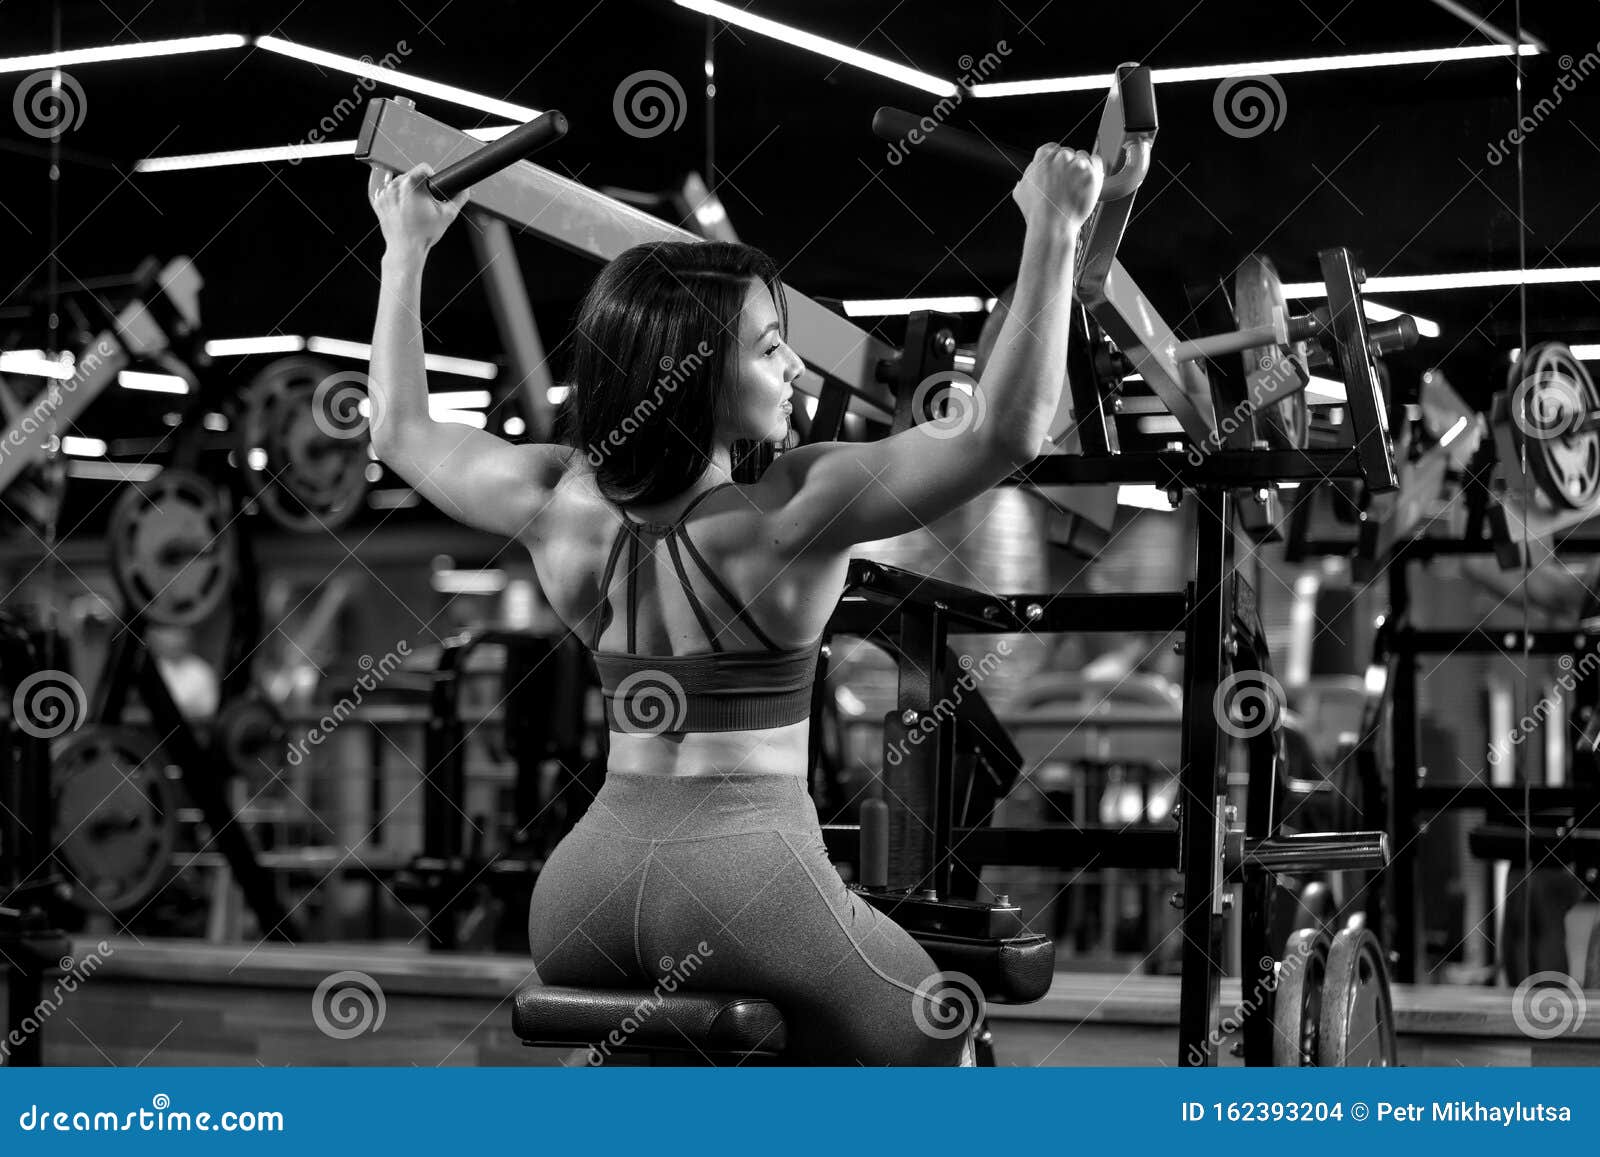 Una Chica Sexy Del Gimnasio EstÃ¡ Sentada Haciendo Ejercicios De Hombro En  El Entrenador Imagen de archivo - Imagen de deporte, hermoso: 159993995